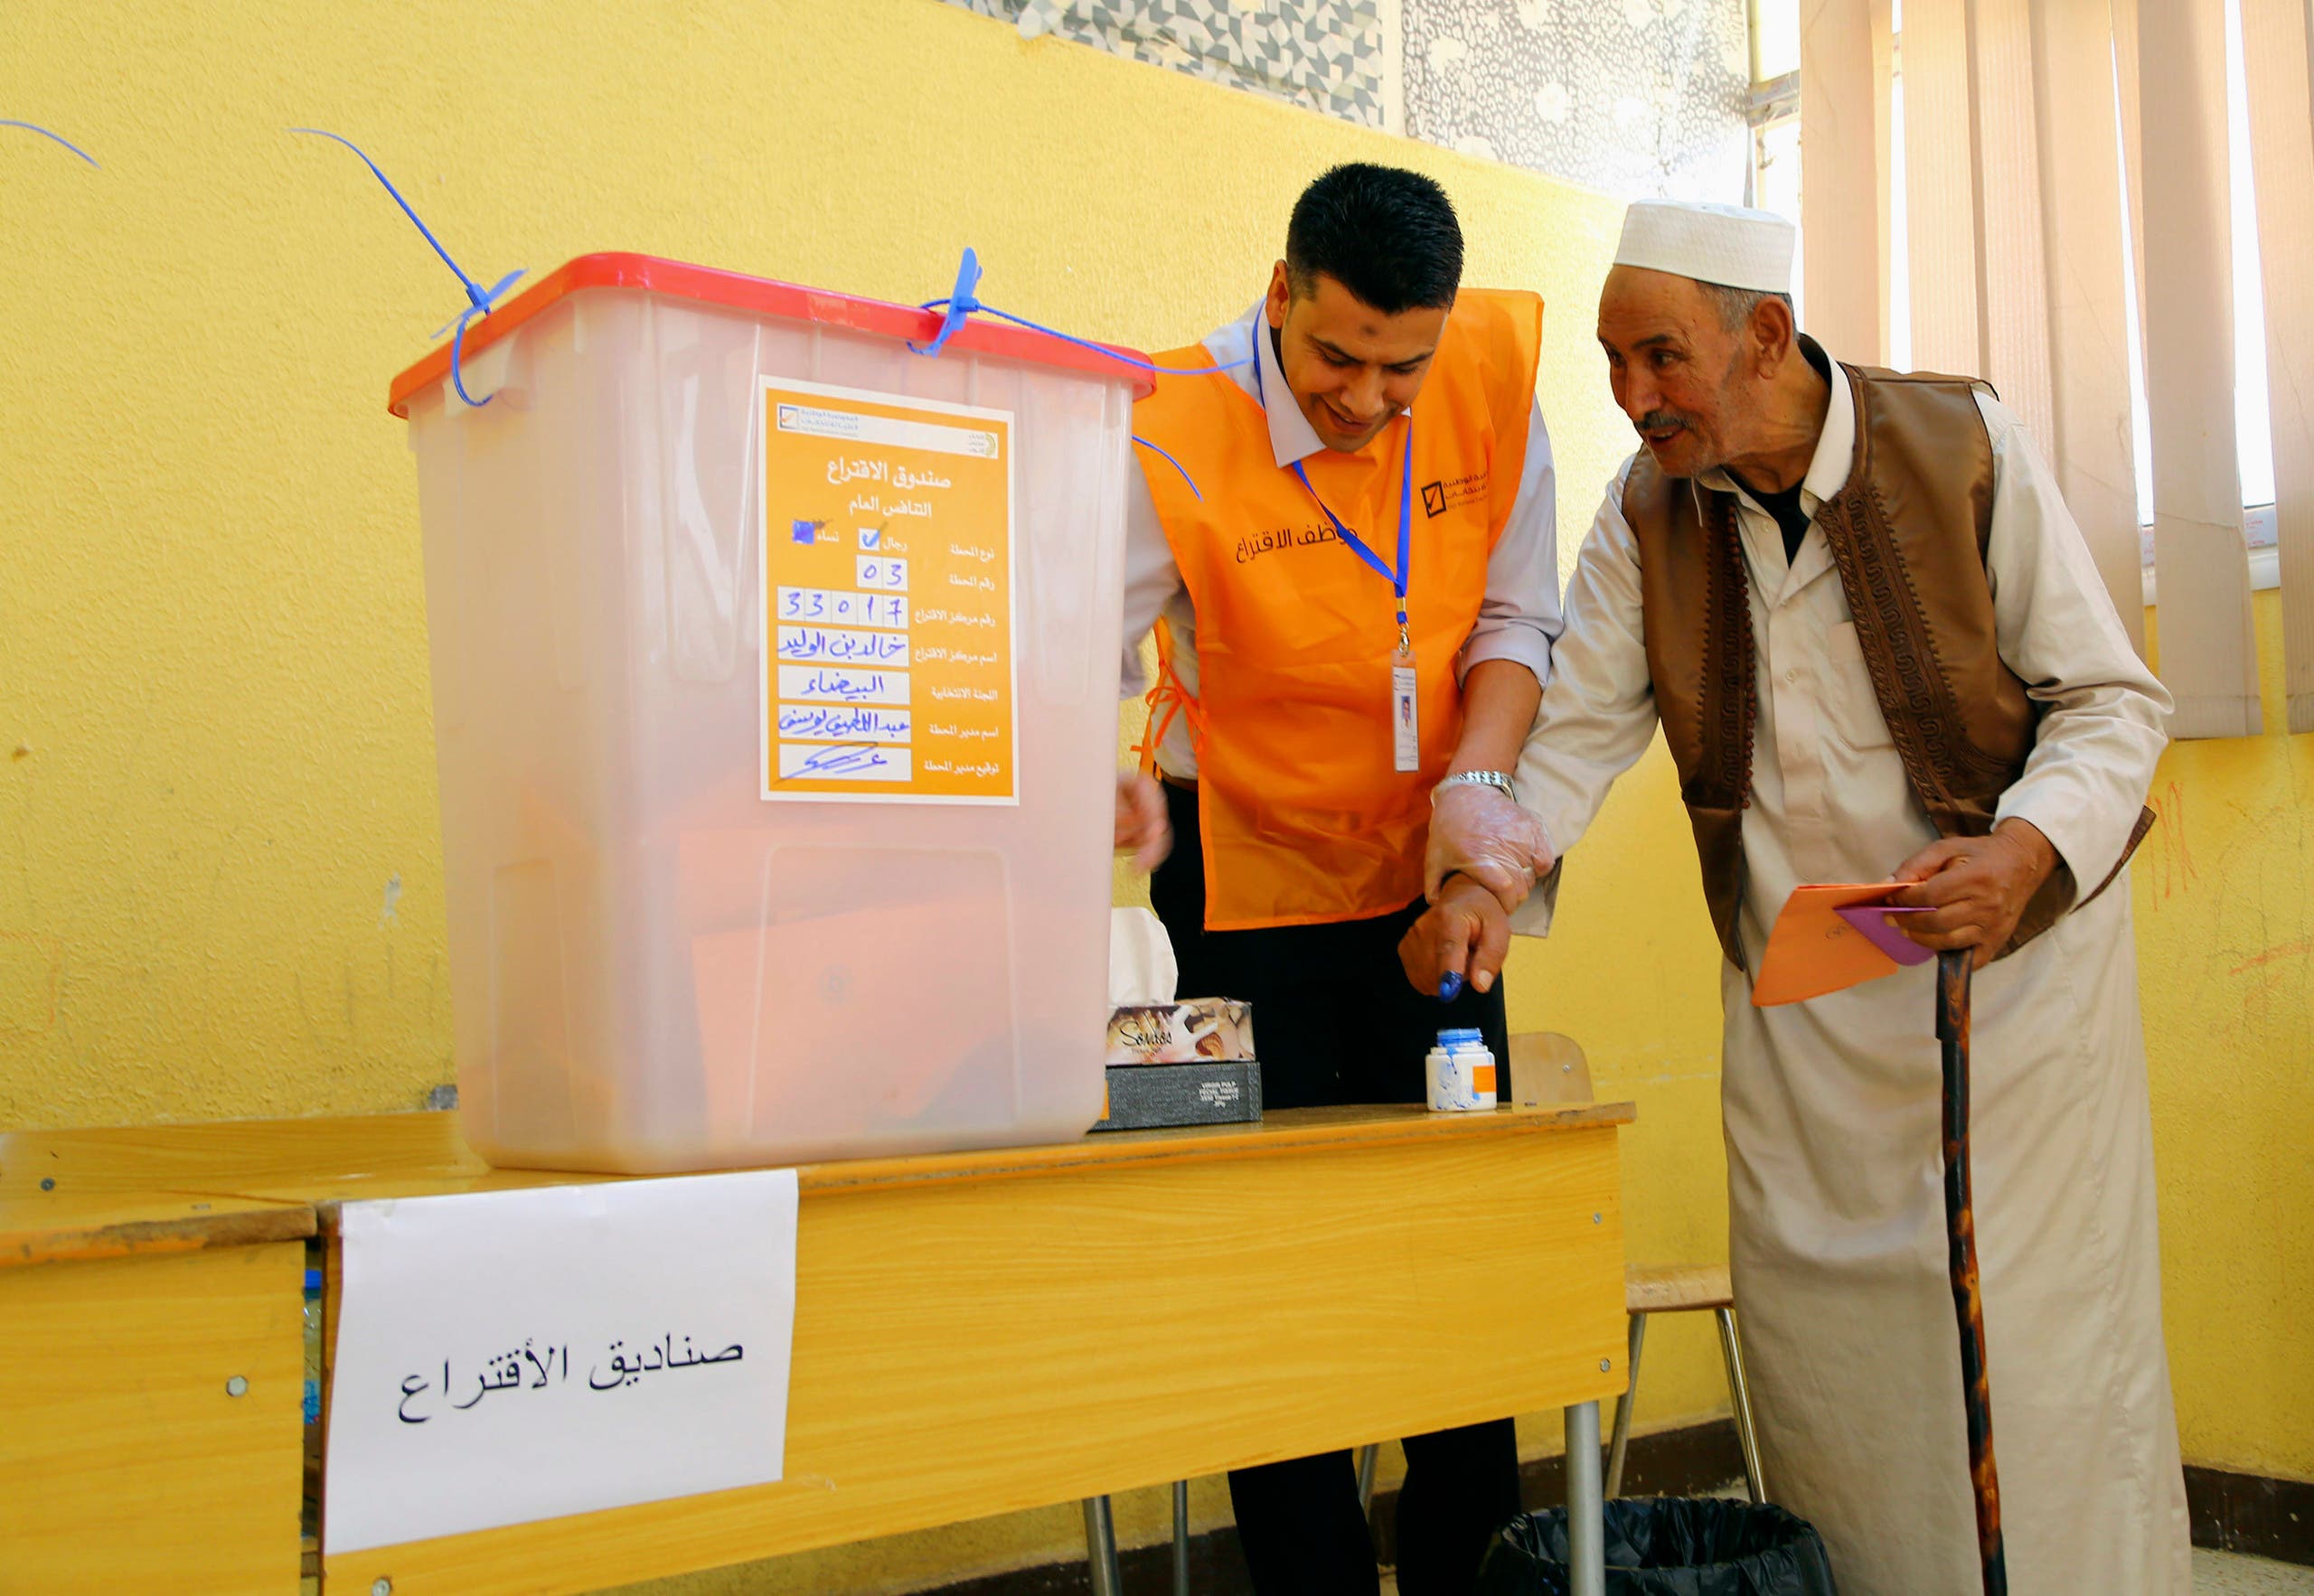 من آخر انتخابات شهدتها ليبيا في 2014